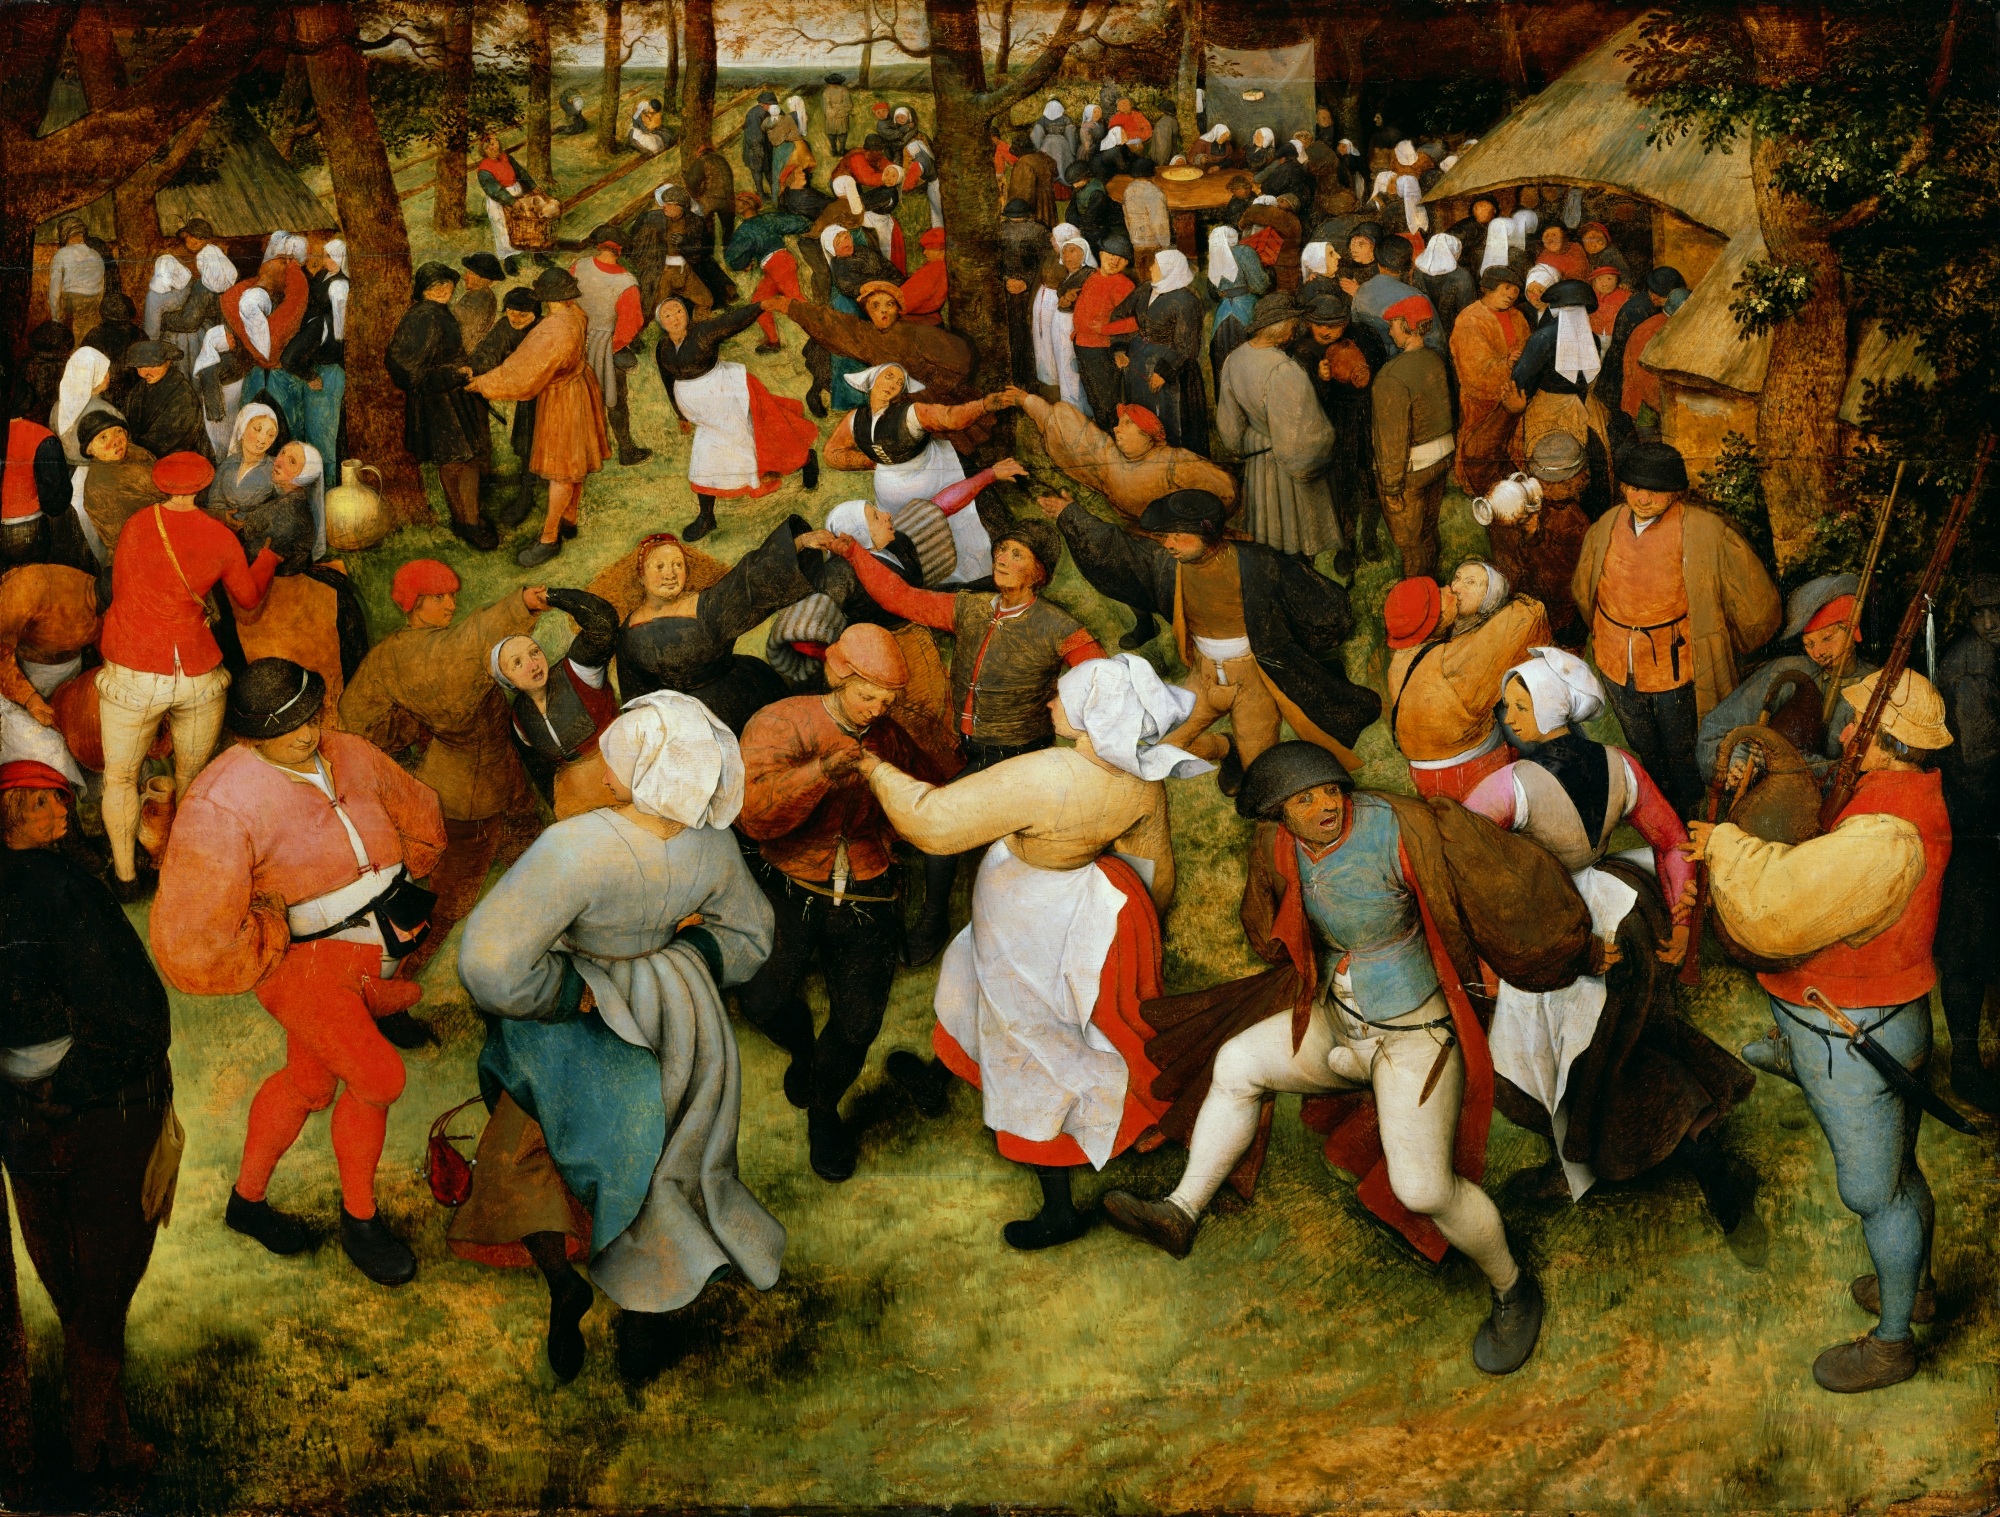 El baile nupcial by Pieter Bruegel el Viejo - 1566 - 119.4 × 157.5 cm Detroit Institute of Arts